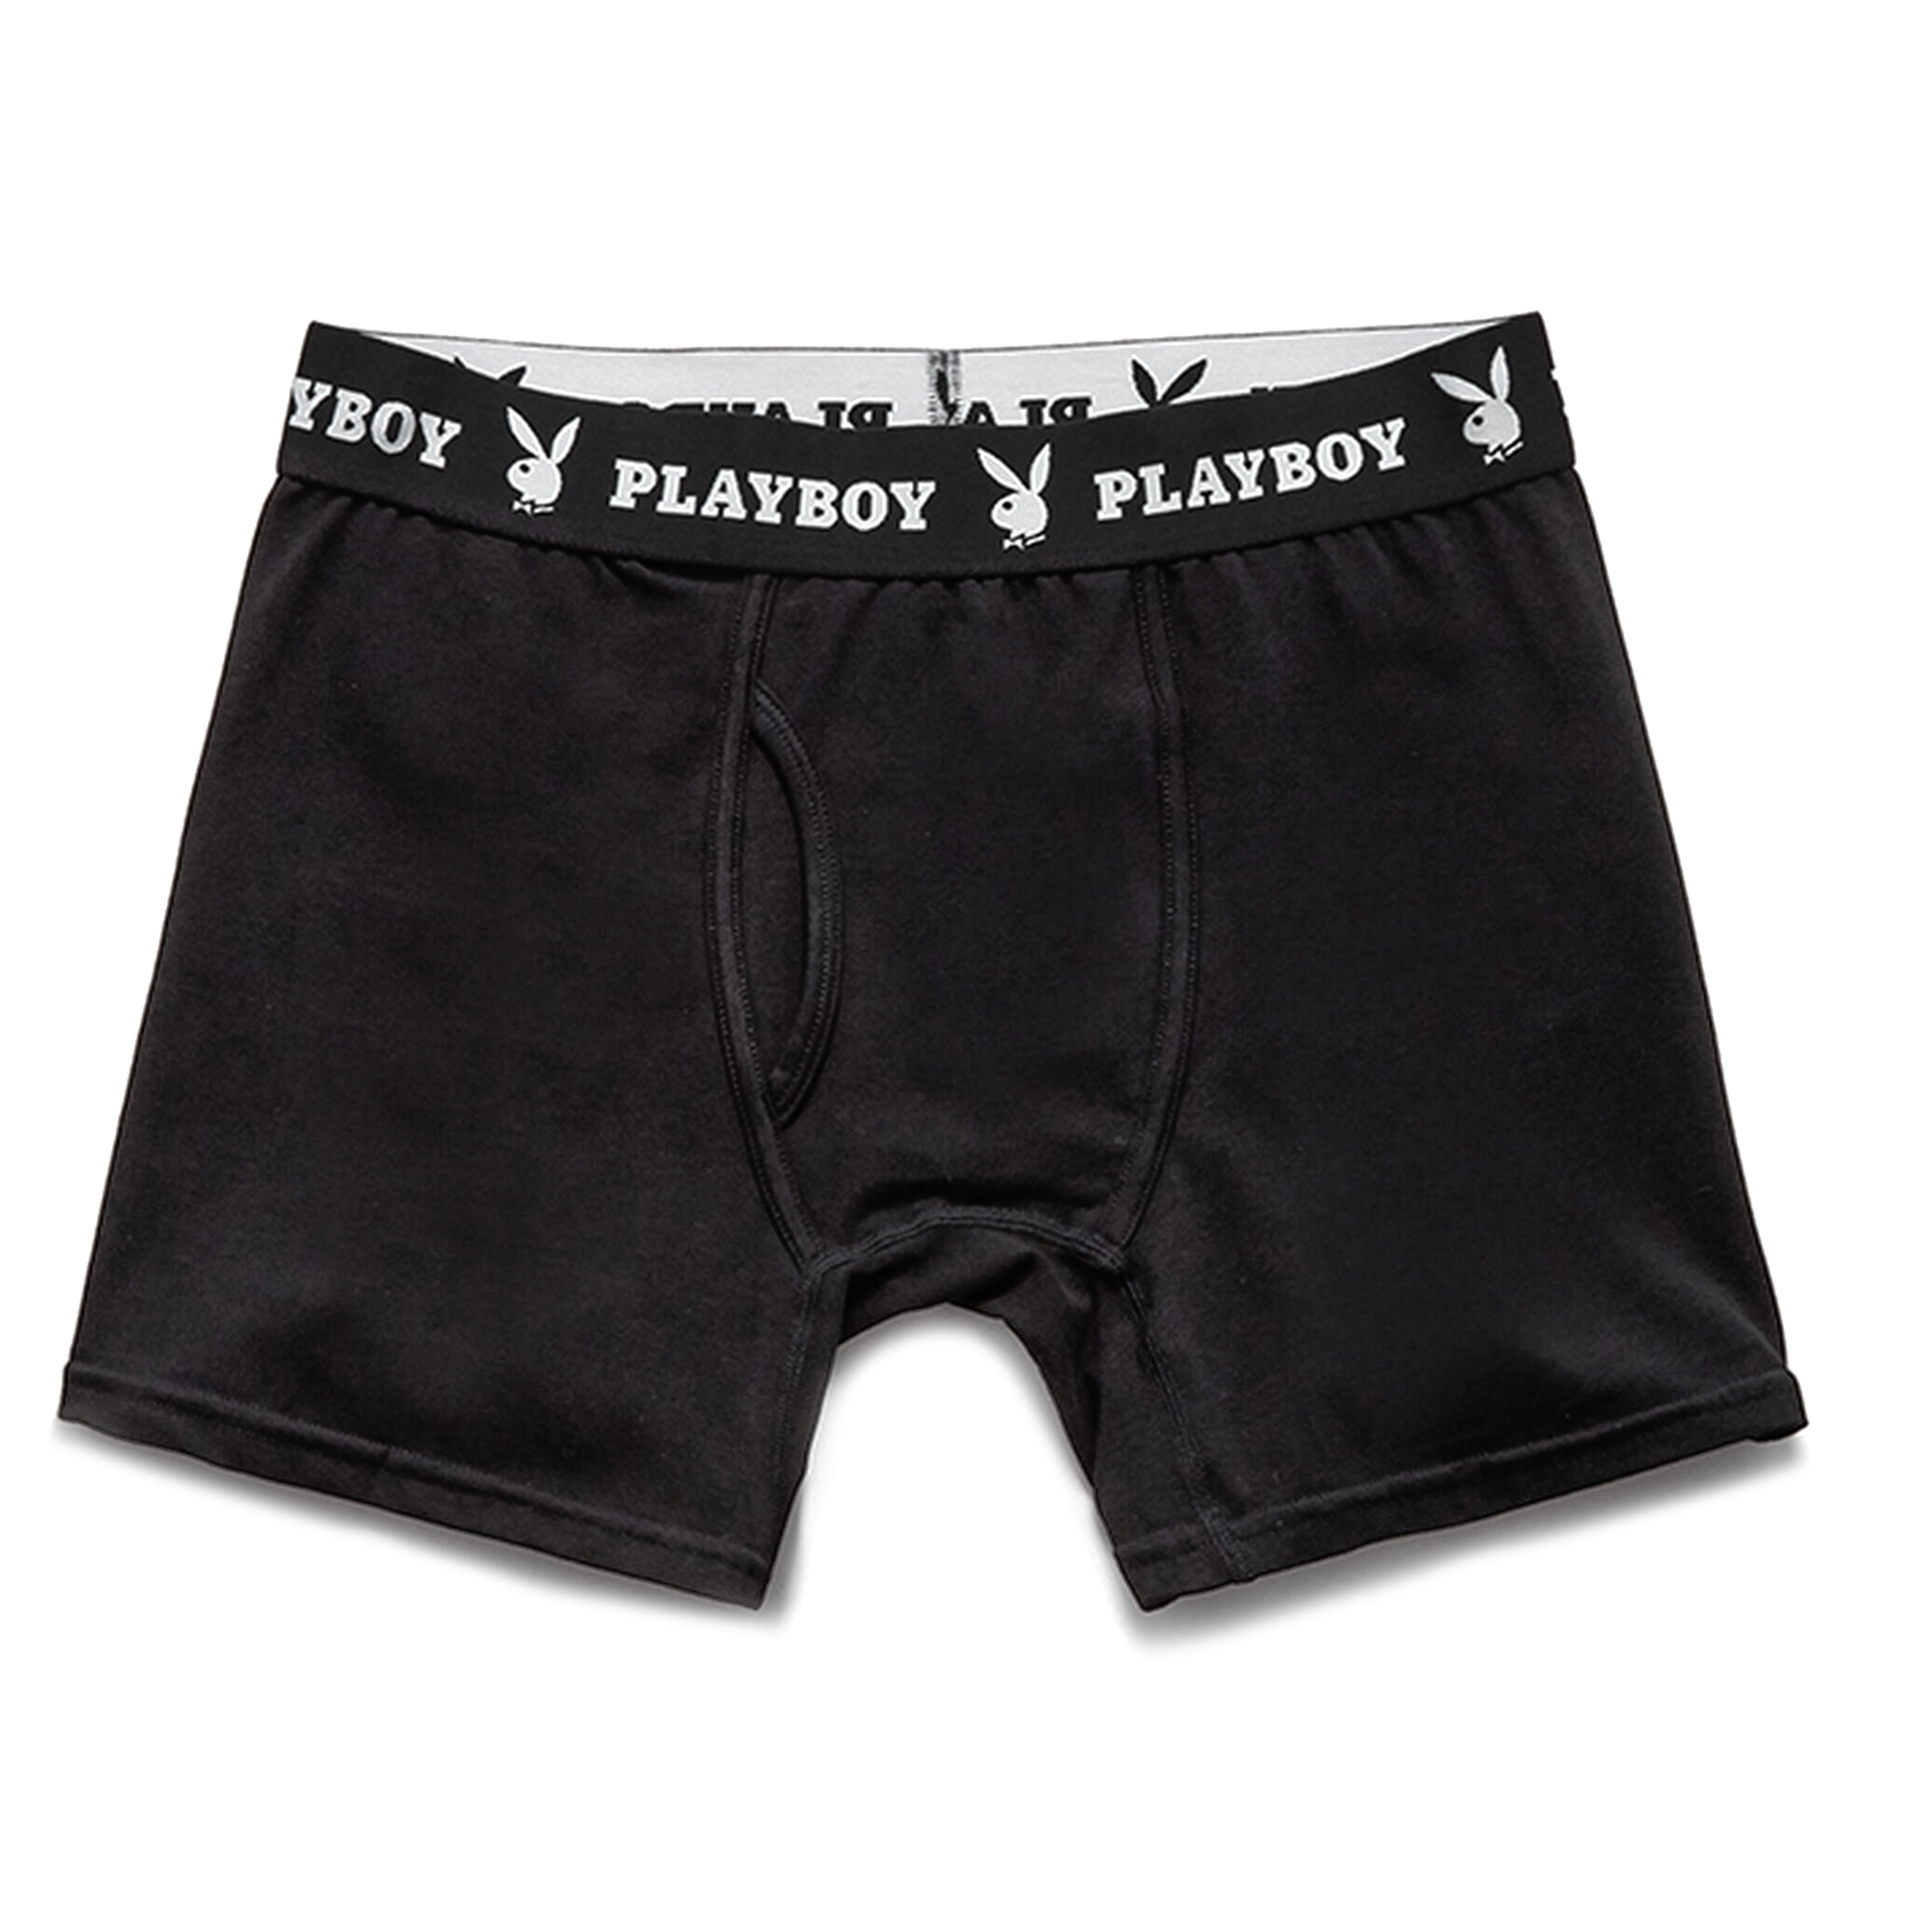 PSD Playboy Chrome Boxer Briefs 422180012 - Shiekh